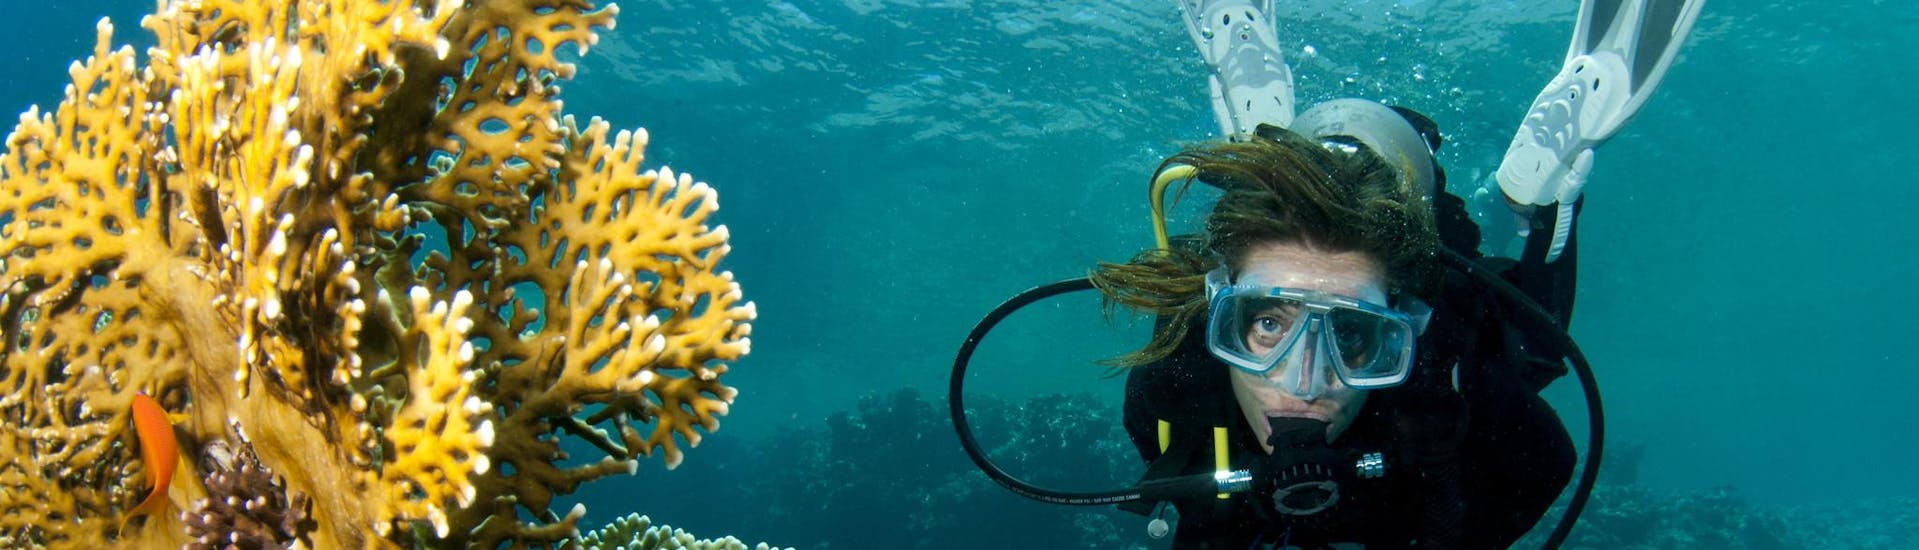 Una mujer se divierte durante una actividad de submarinismo en arrecifes y corales.